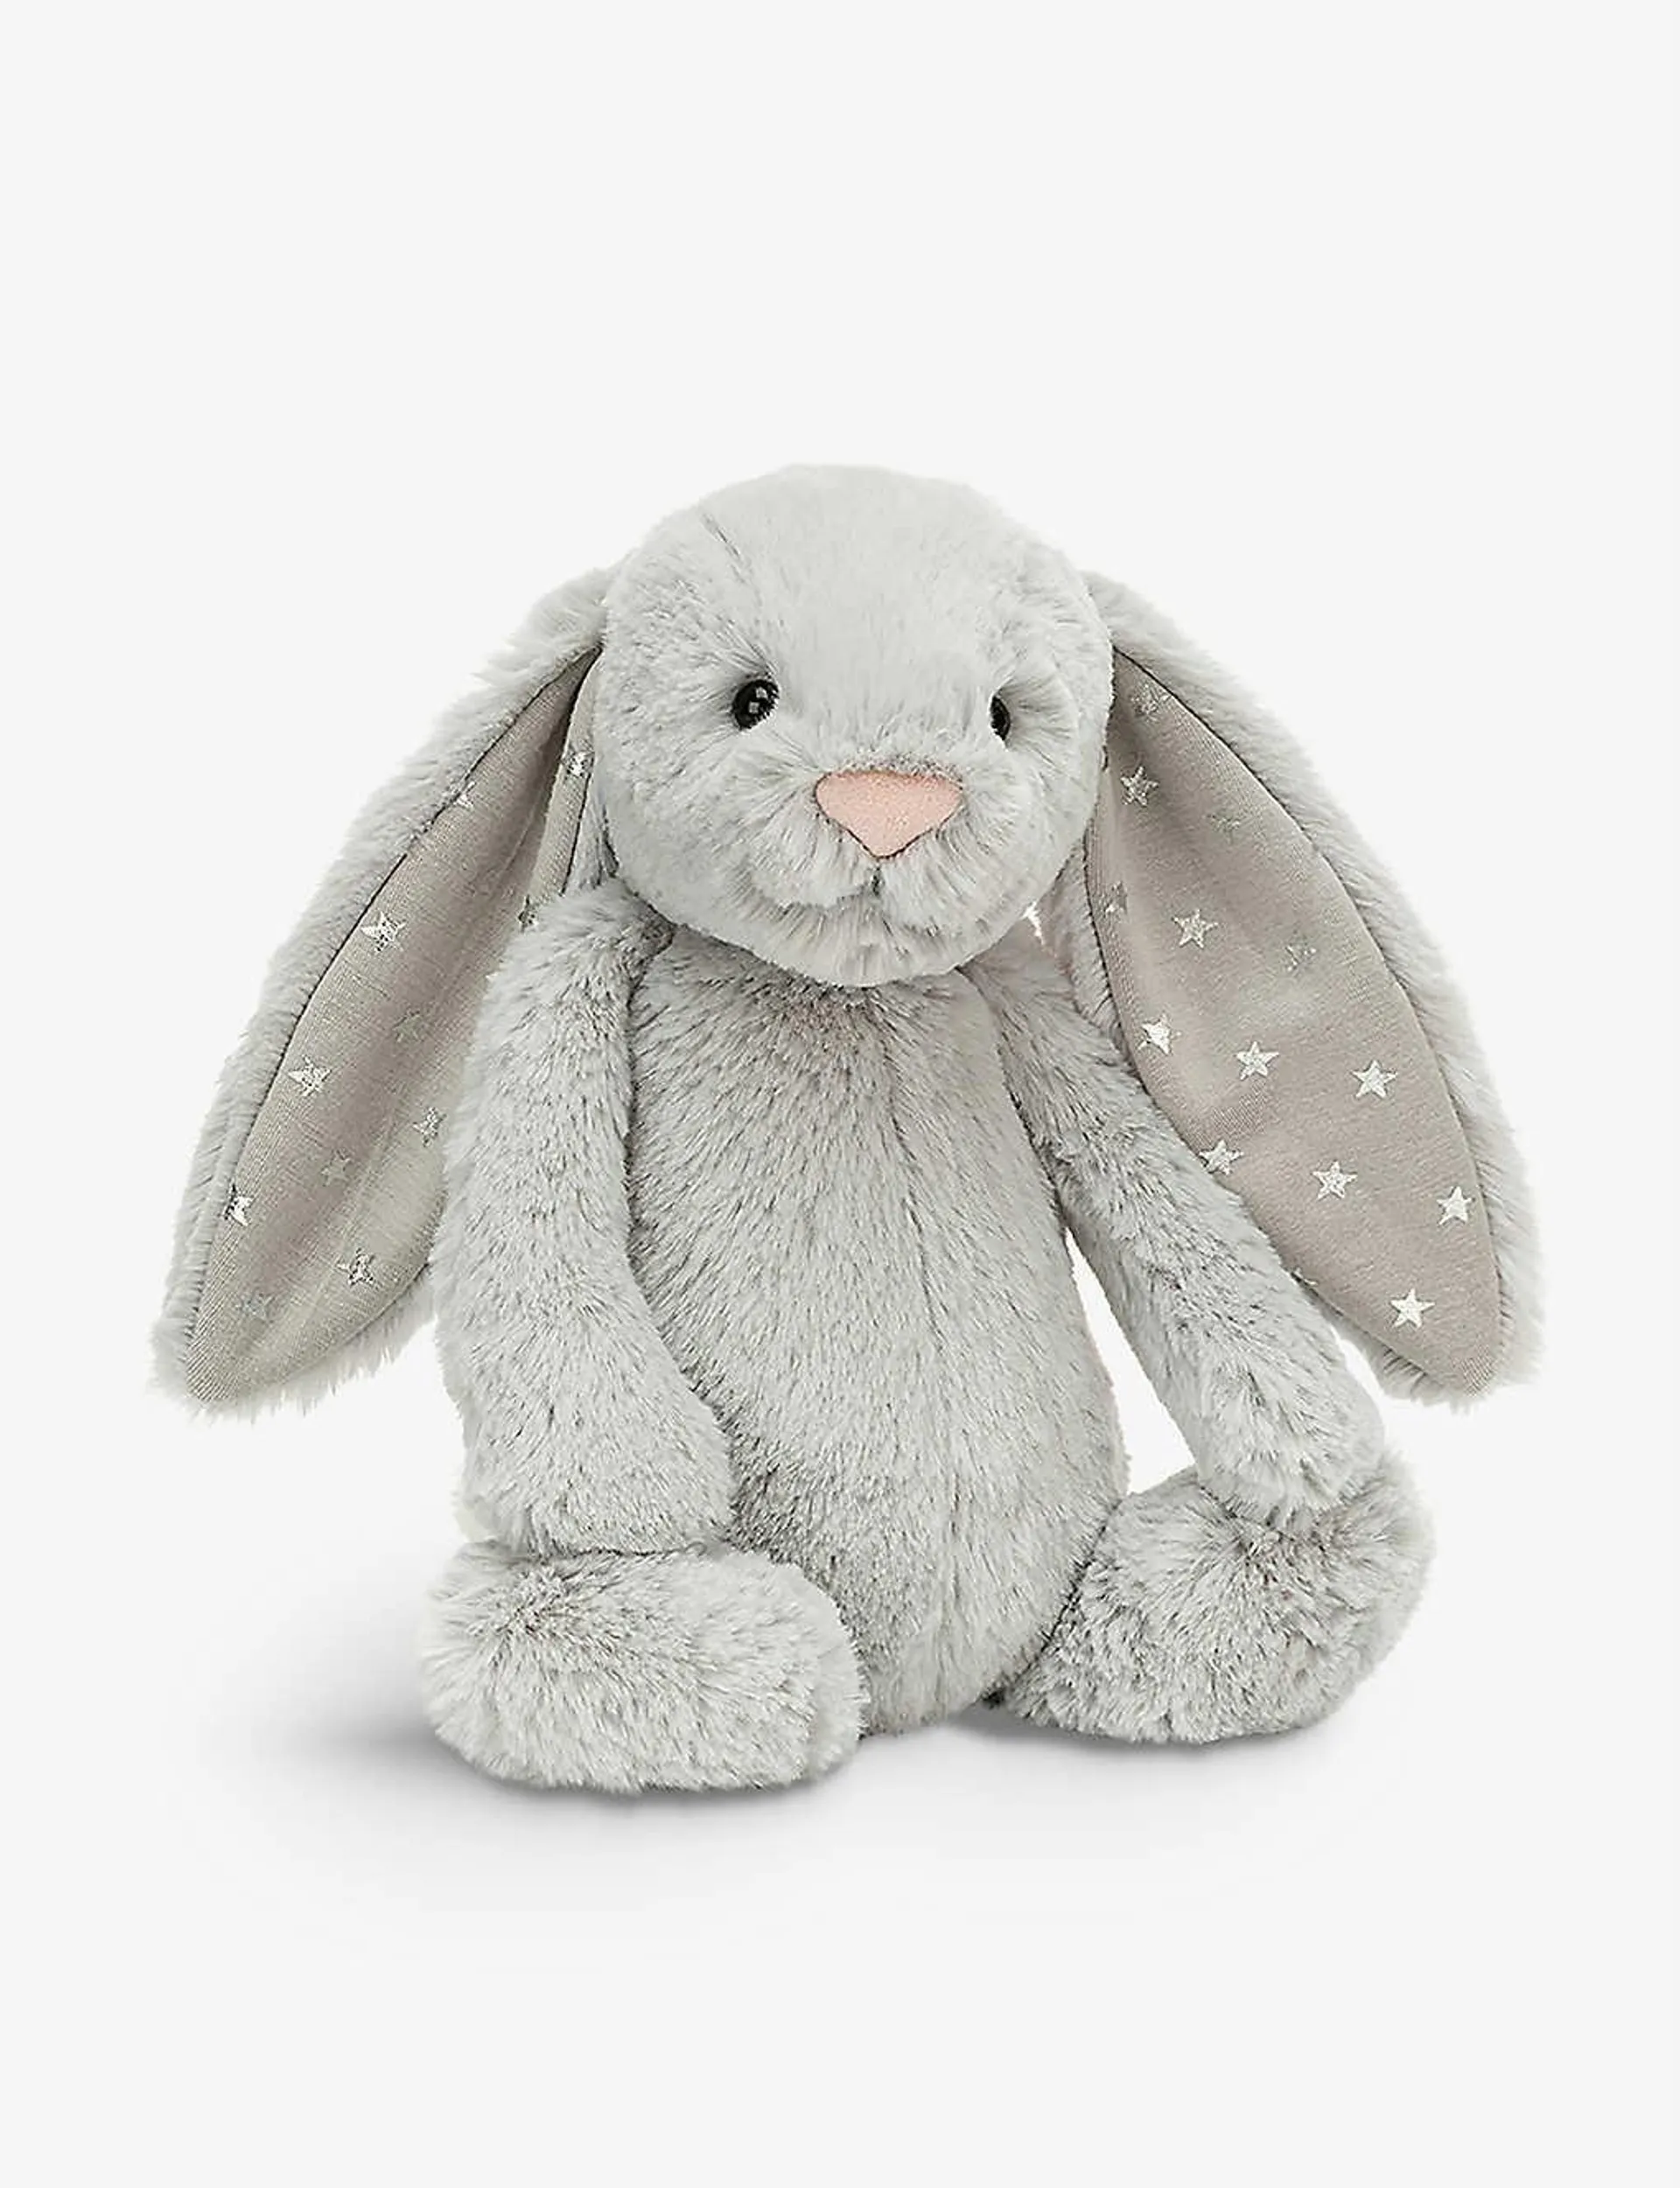 Medium Bashful Shimmer Bunny soft toy 31cm